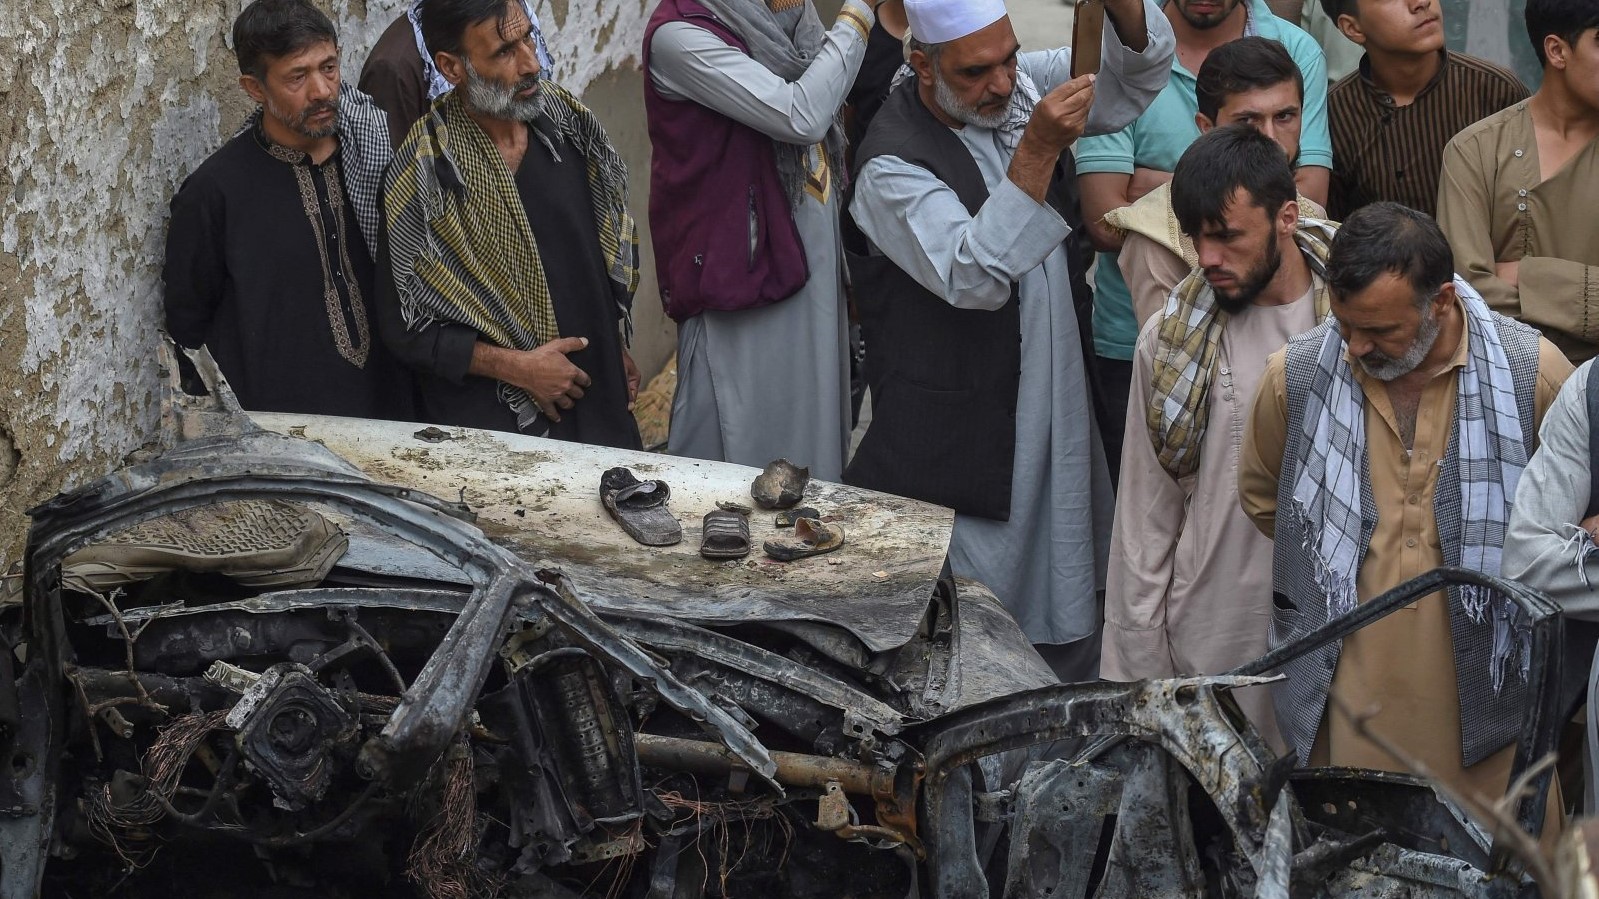 سكان أفغان وأفراد عائلات ضحايا يتجمعون بجوار سيارة مدمرة قرب منزل في اليوم التالي لغارة جوية أميركية بطائرة مسيرة في كابول، أفغانستان، في 30 أغسطس 2021